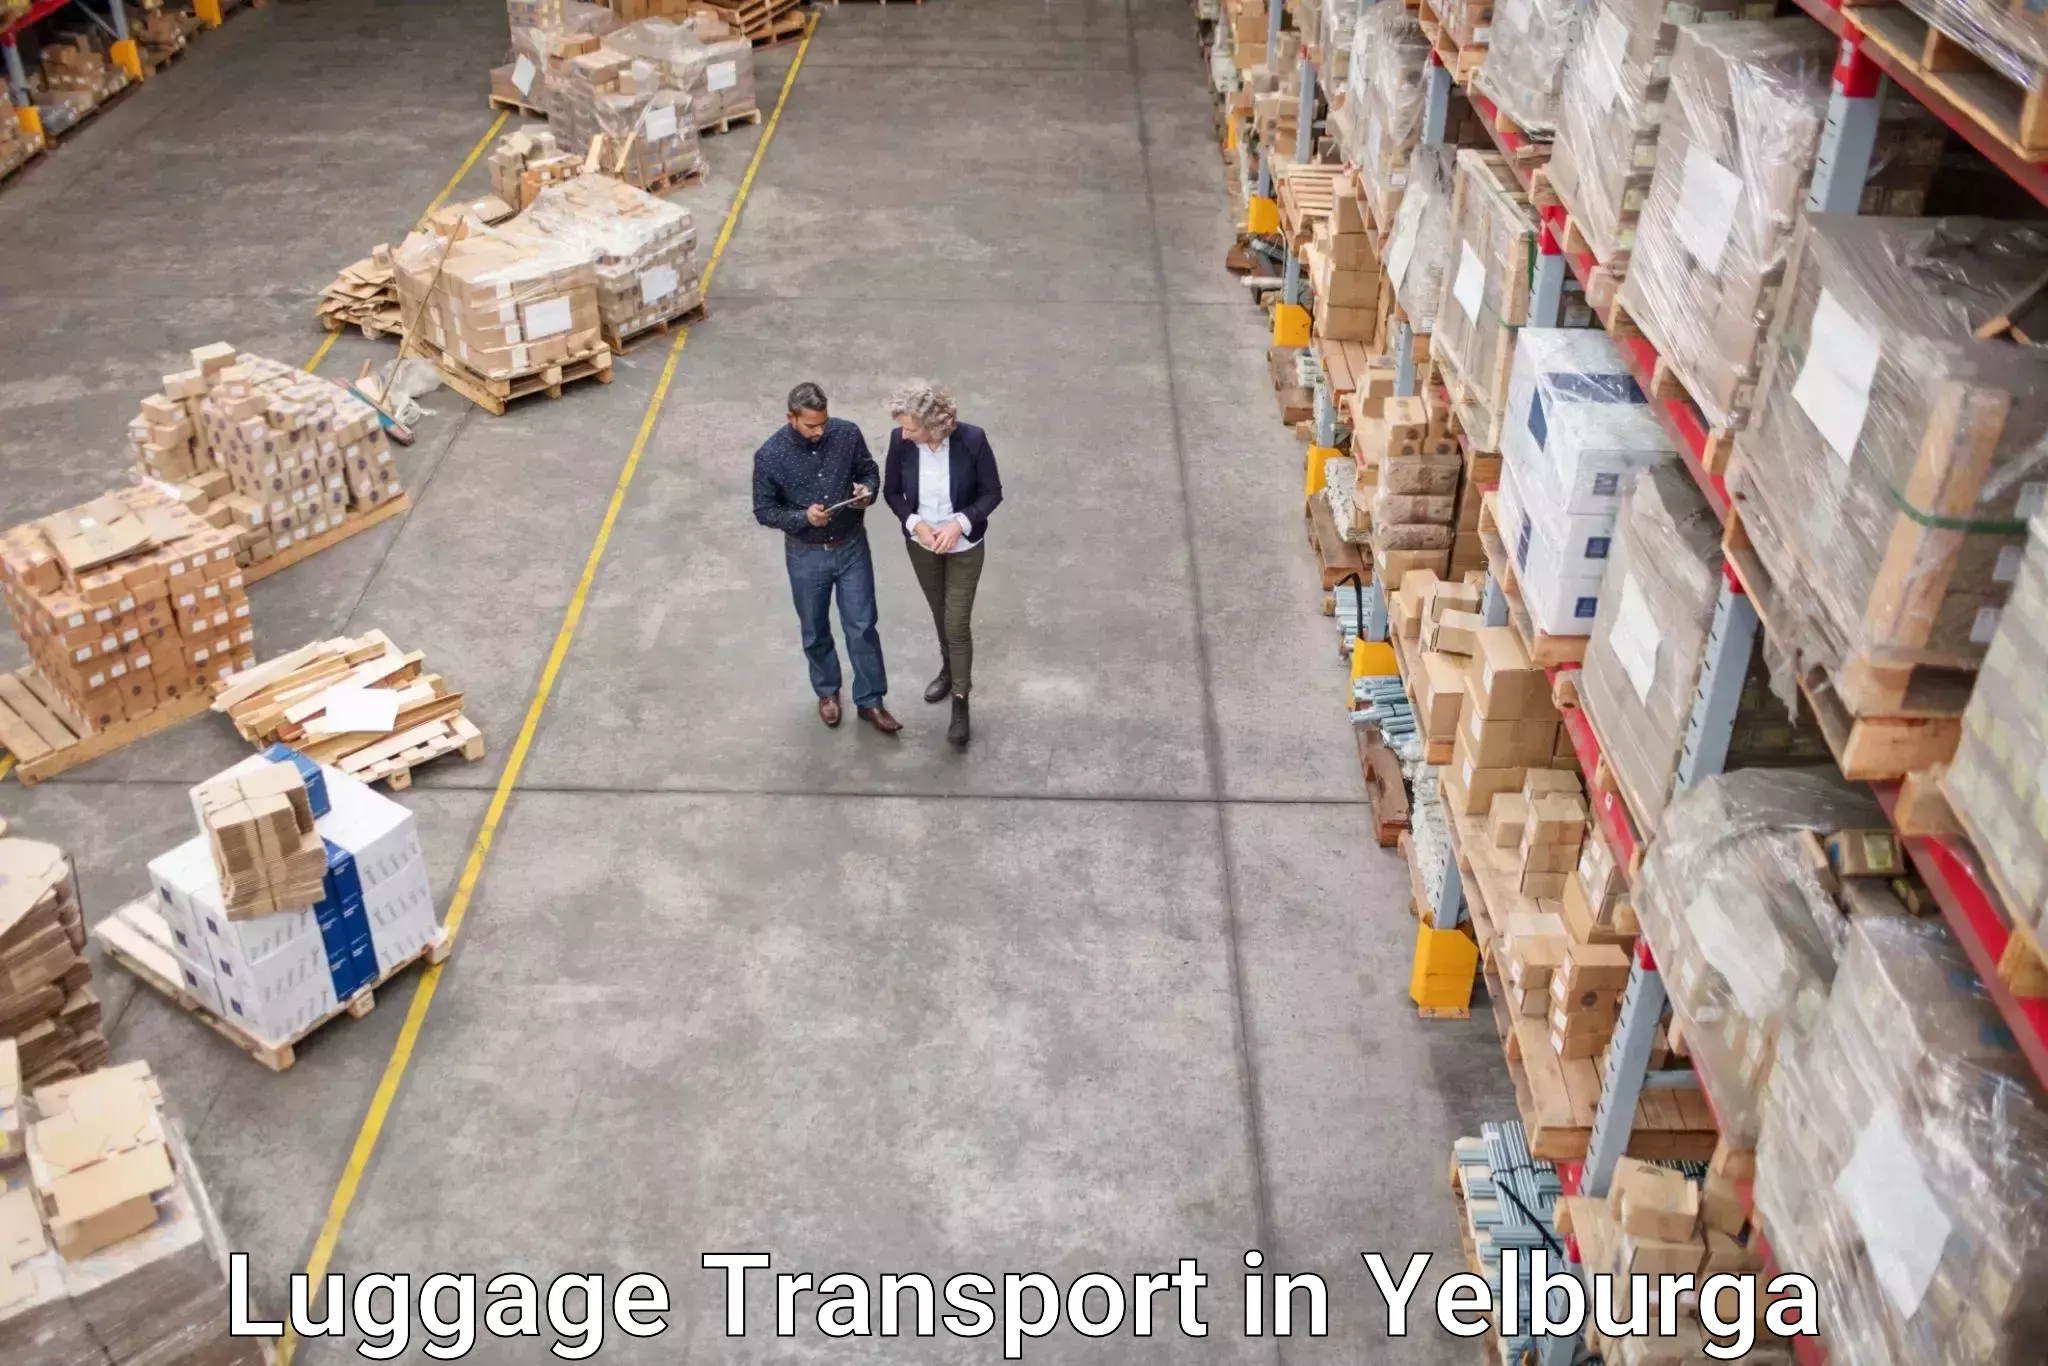 Baggage transport estimate in Yelburga